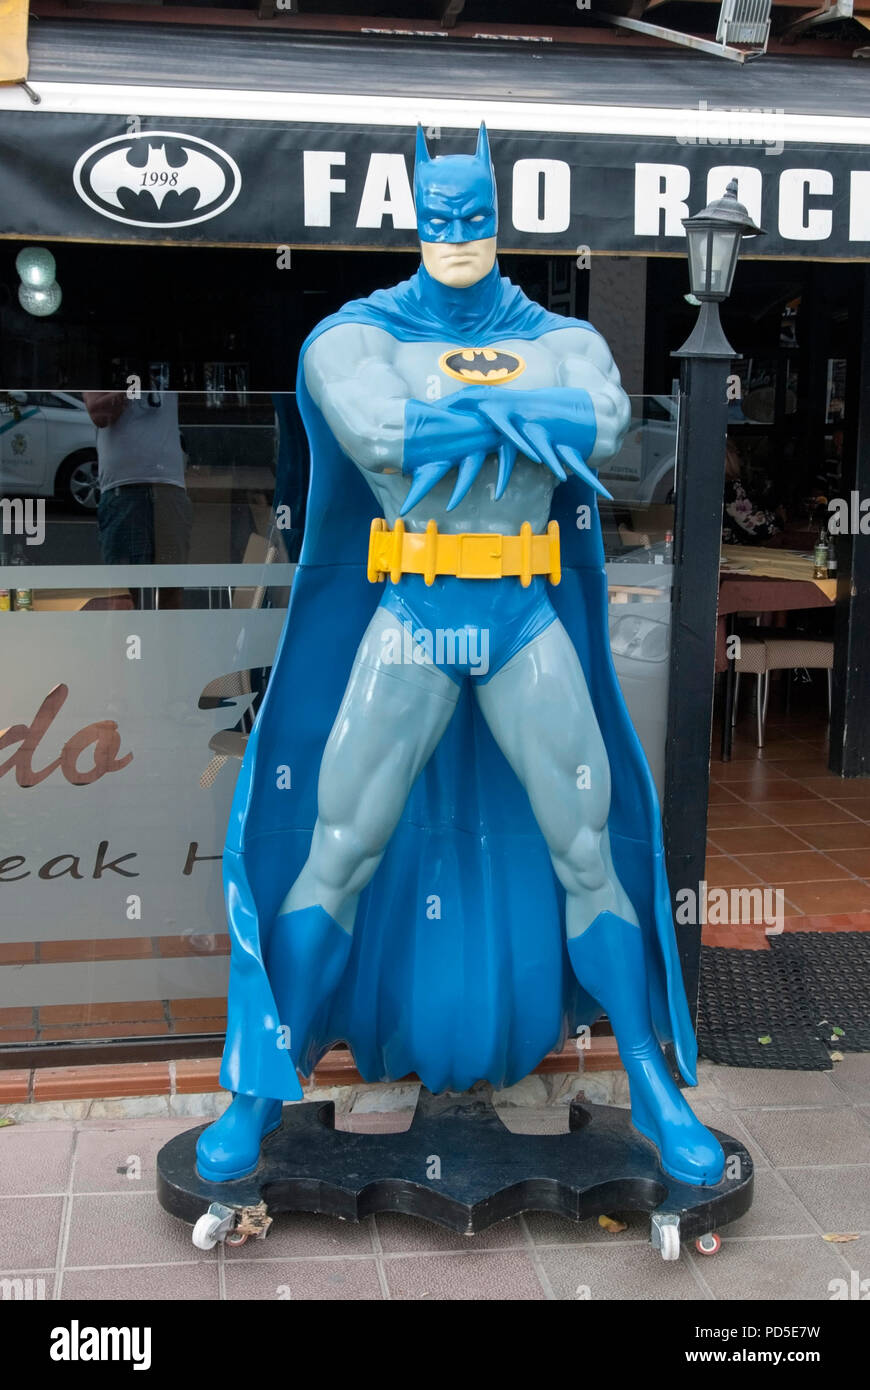 La figura del superhéroe Batman lifesize modelo de macho americano icono  del superhéroe Batman en traje gris y azul de la capa y la máscara anuncio  fuera Fado Rock S Fotografía de